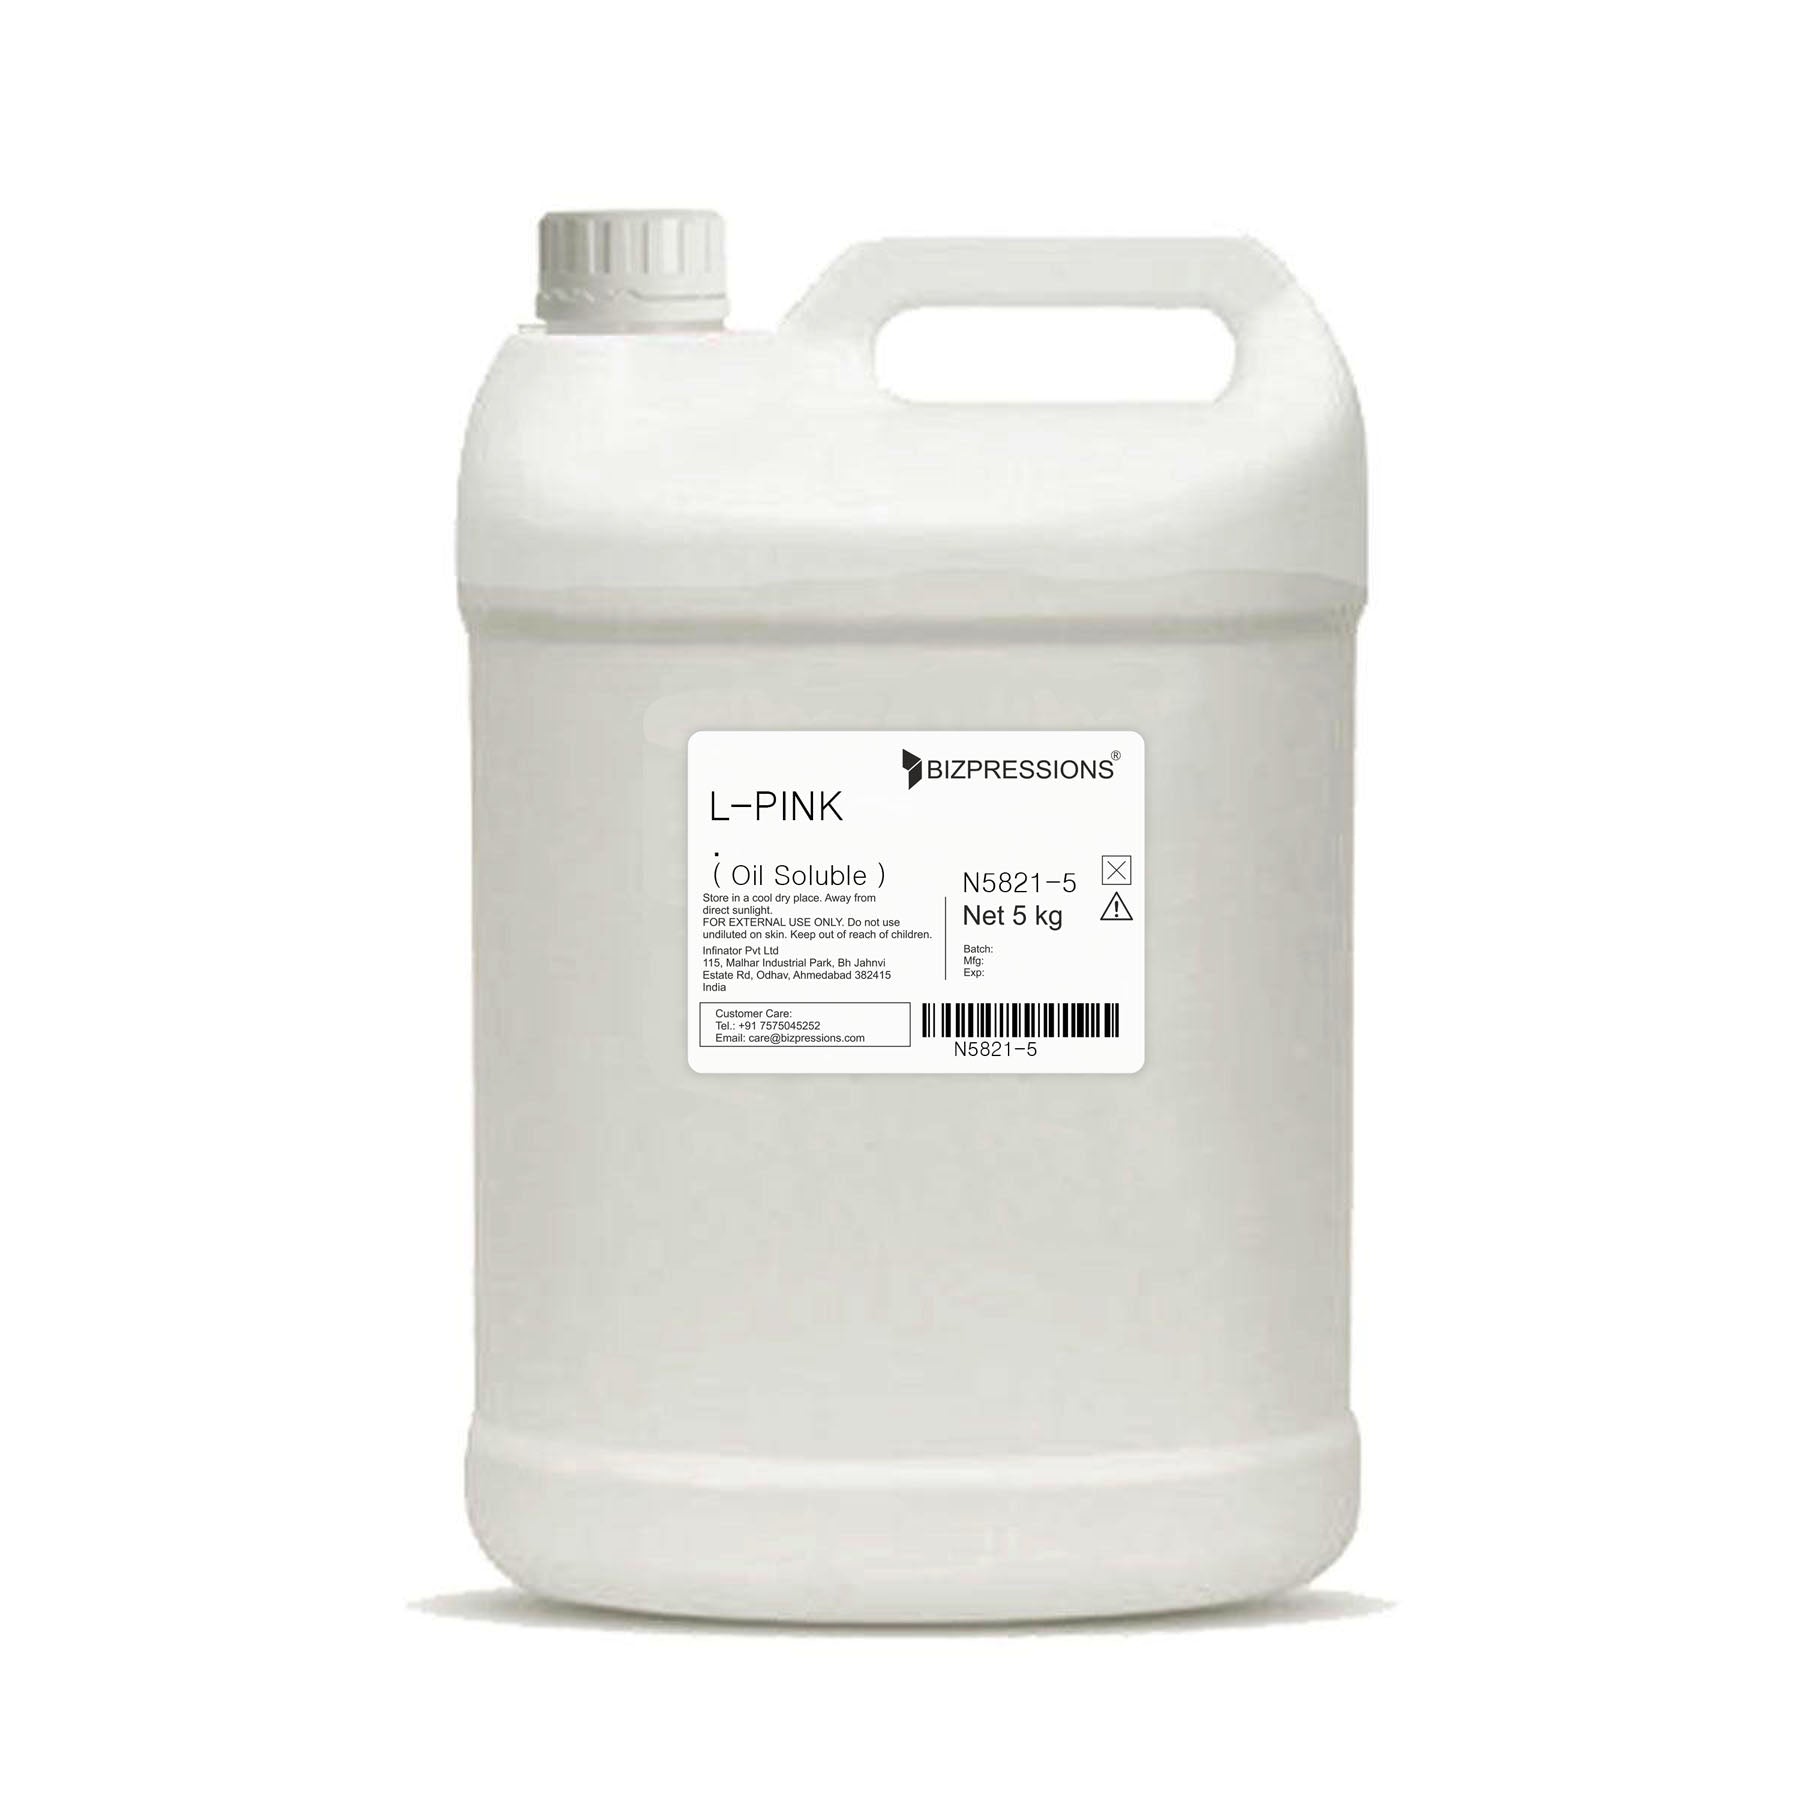 L-PINK - Fragrance ( Oil Soluble ) - 5 kg